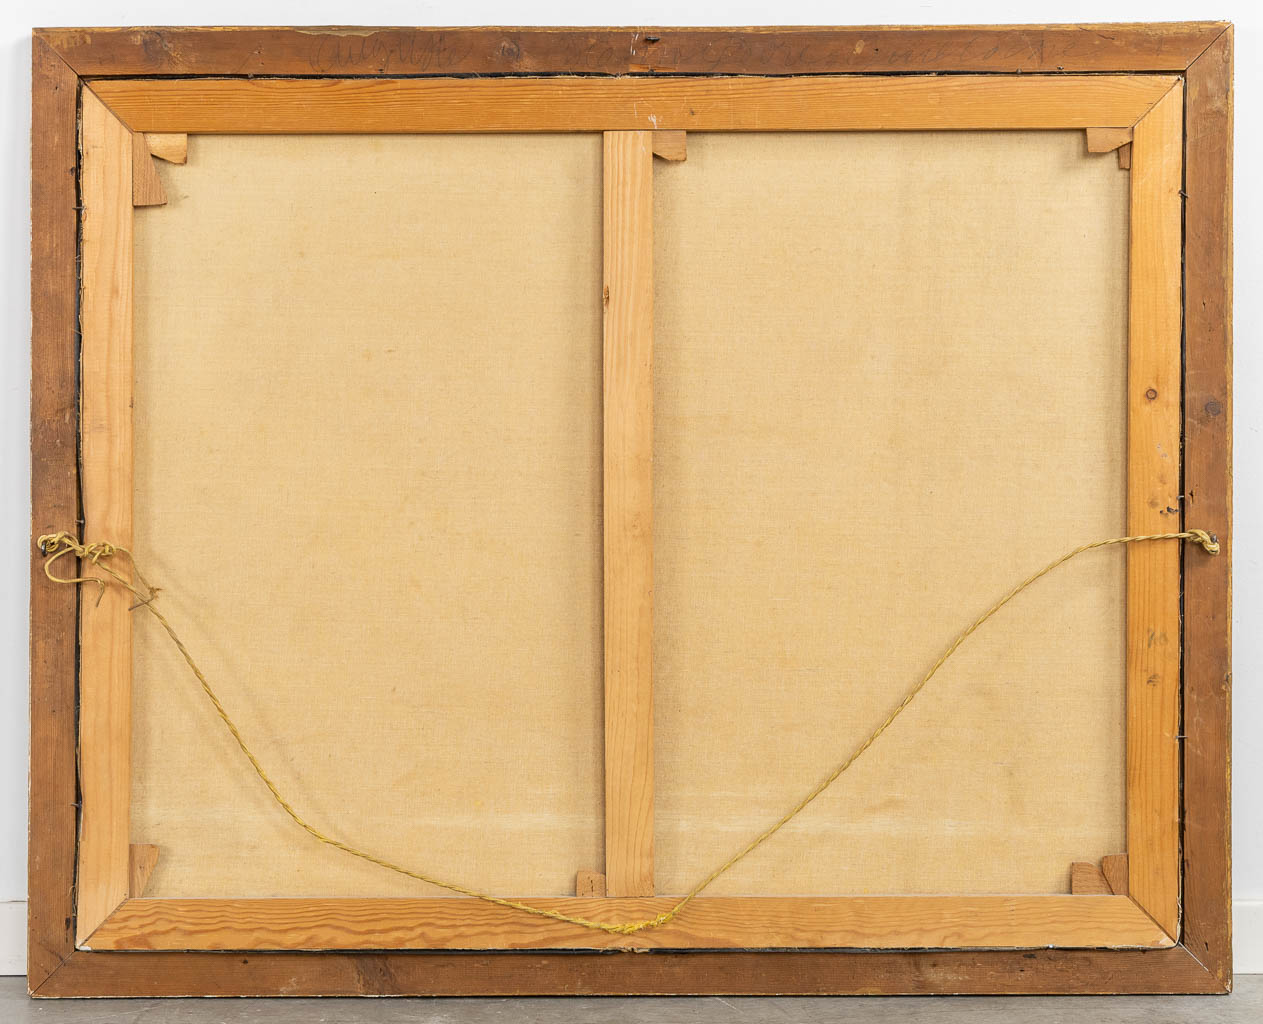 French School, After Francois Boucher, "Pensent-ils au raisin?" 19th C. (W:100 x H:79 cm)